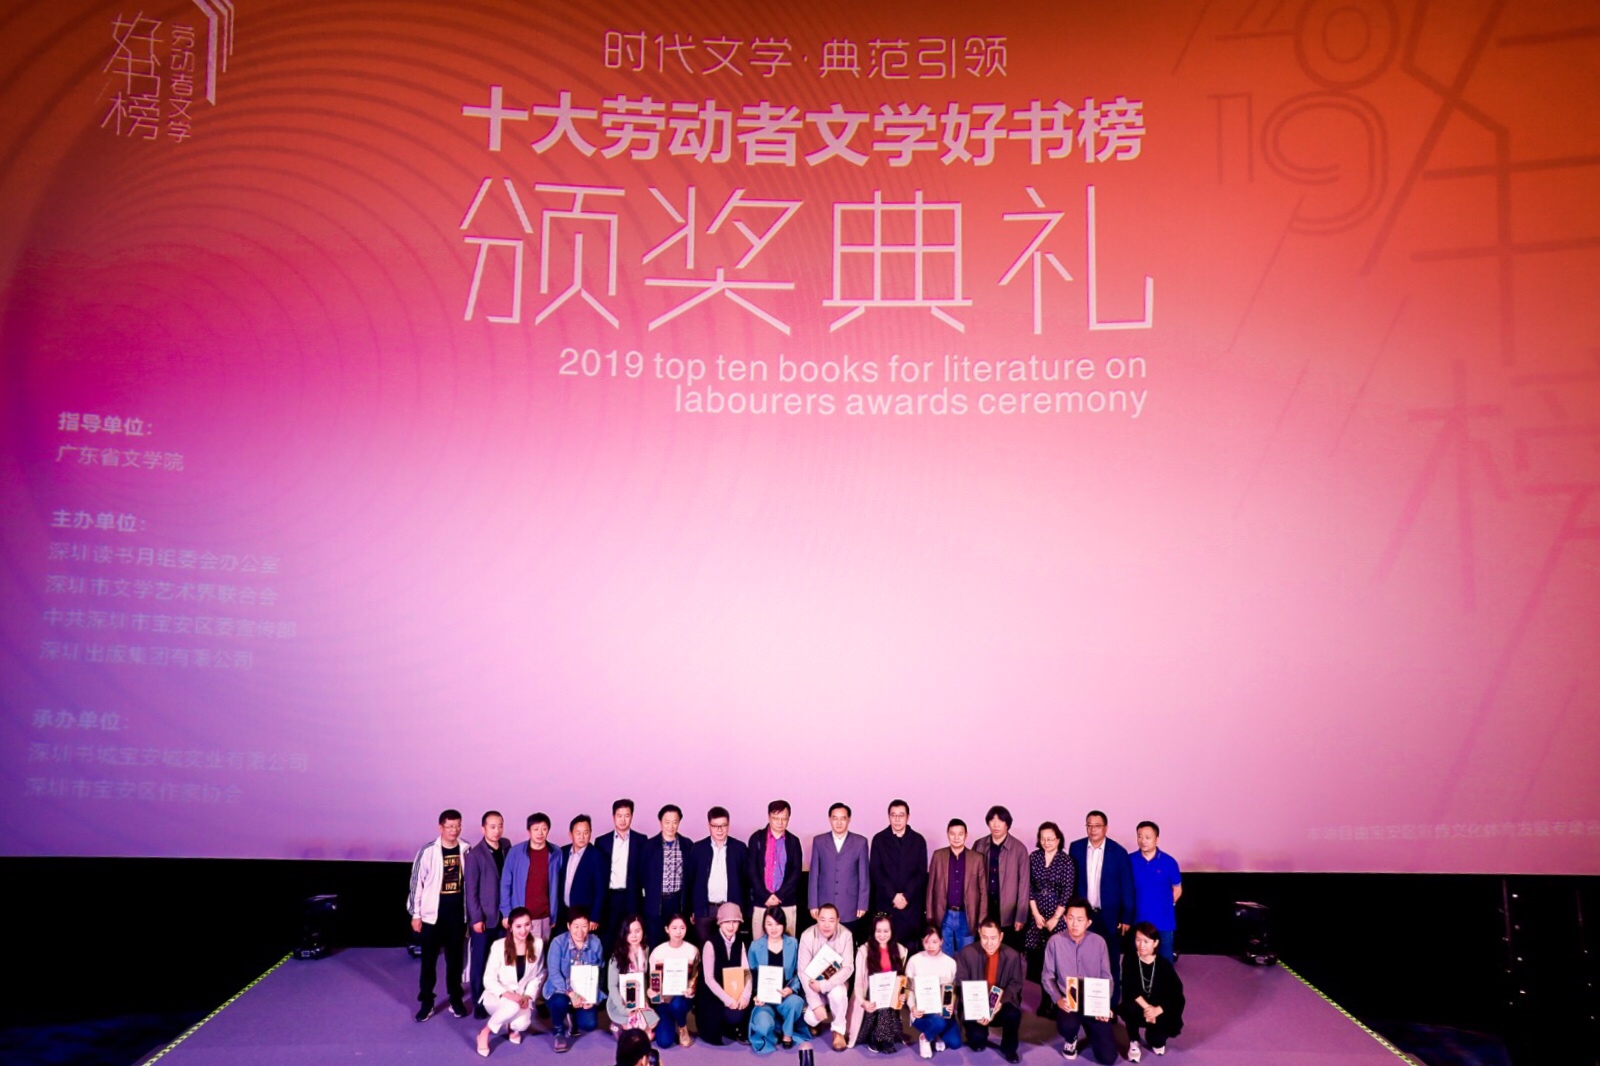 第二届“全国劳动者文学好书榜”在深圳颁奖